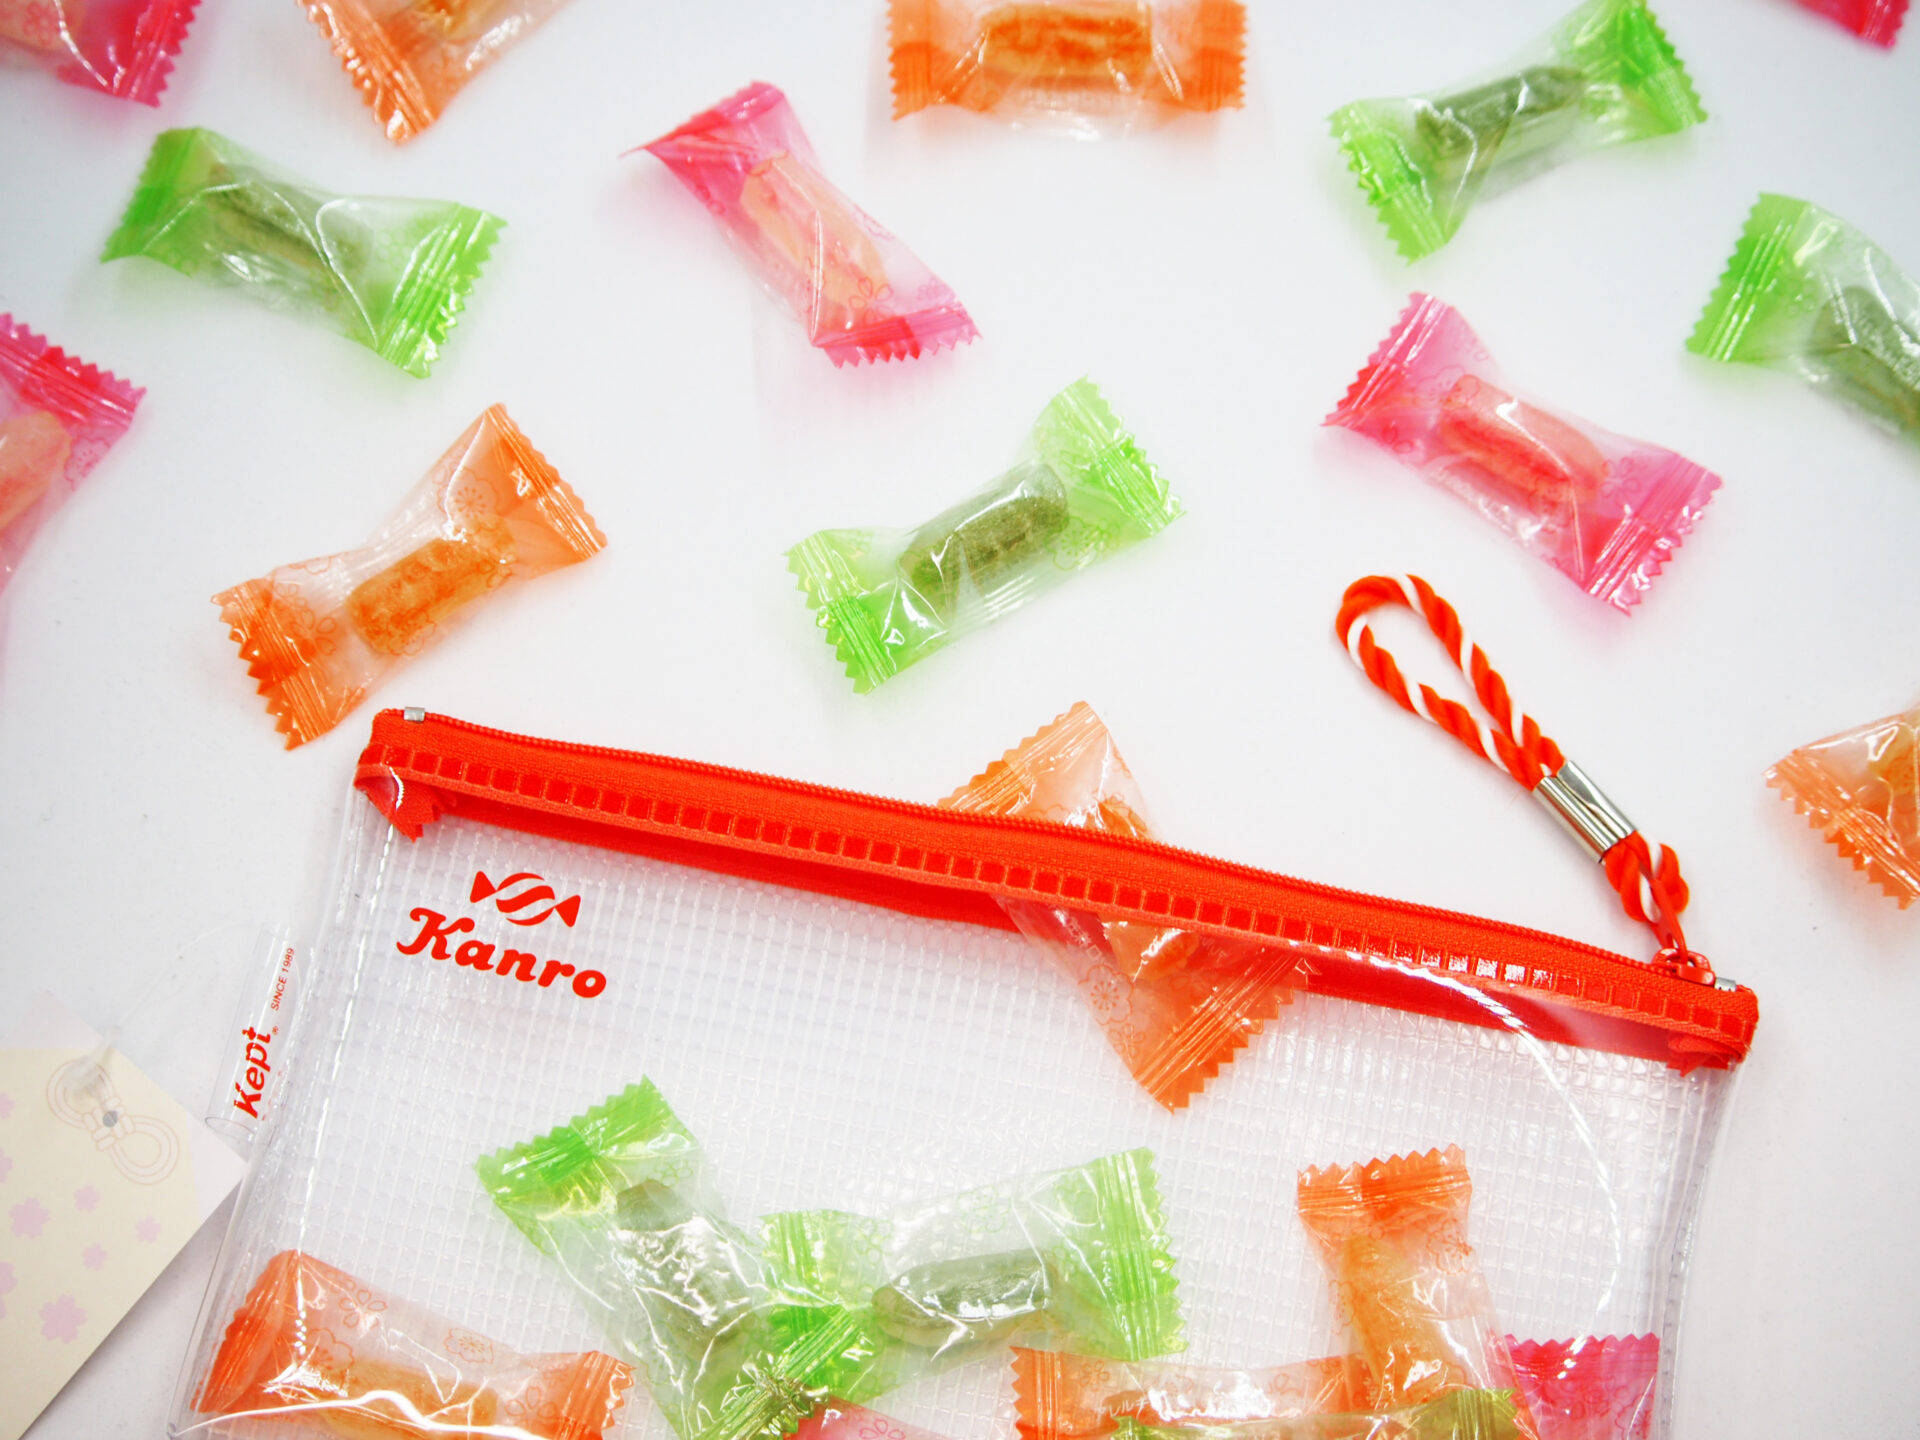 勉強する人のためのキャンディ「天才糖」の商品写真。天才糖の天才は、ジーニアスという意味合いの天才の漢字を使い、砂糖のてんさい糖とかけている